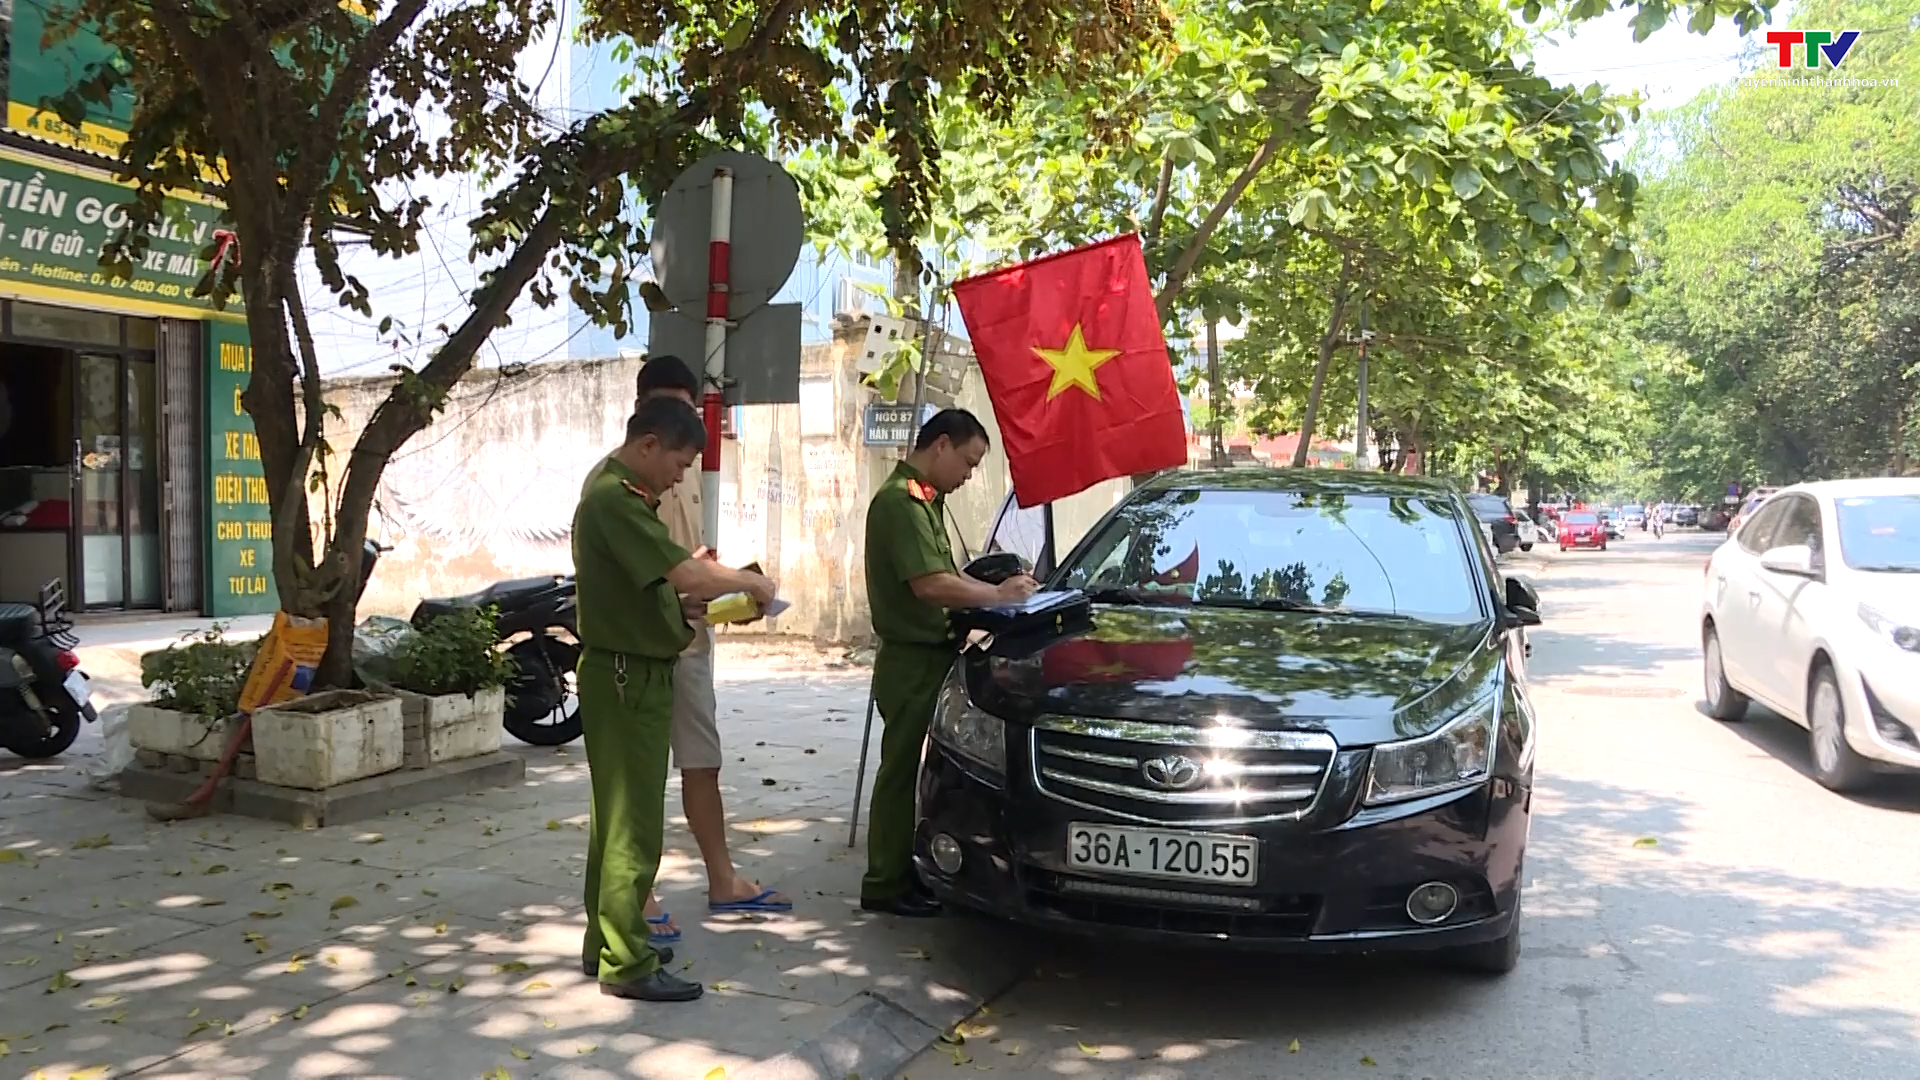 Cần có giải pháp chấn chỉnh tình trạng dừng, đỗ xe sai quy định tại thành phố Thanh Hoá  - Ảnh 5.